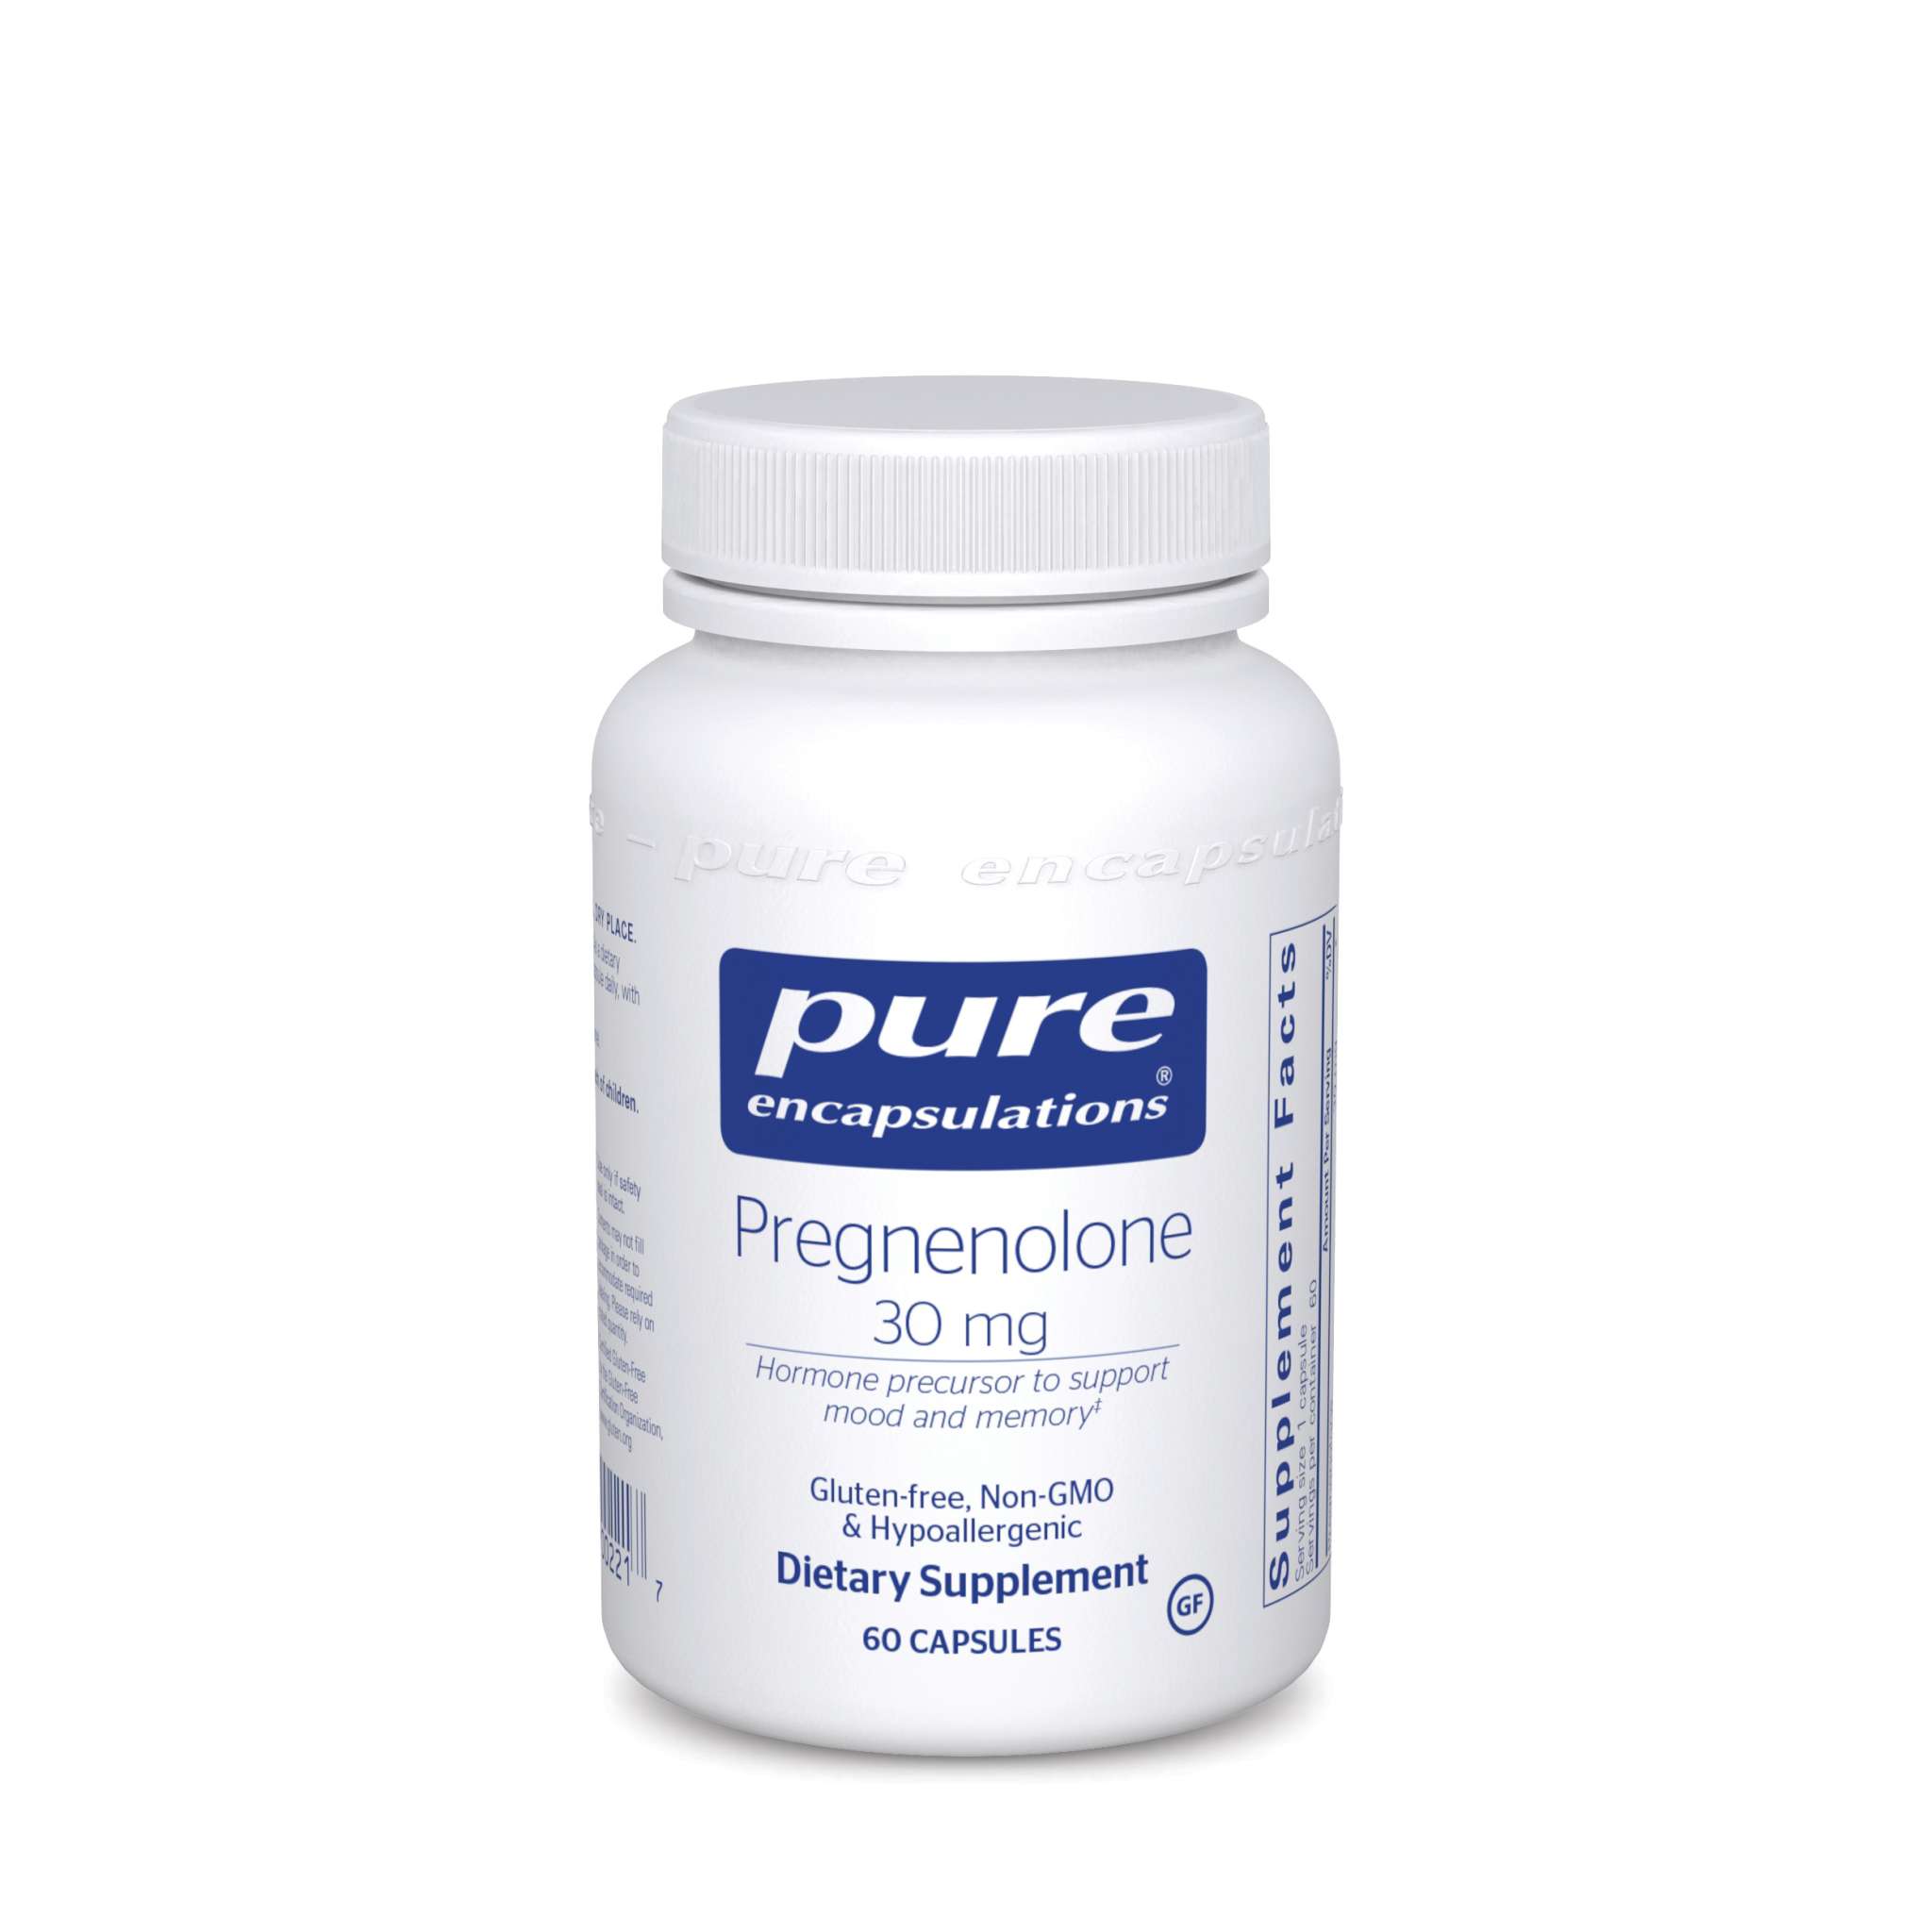 Pure Encapsulations - Pregnenolone 30 mg